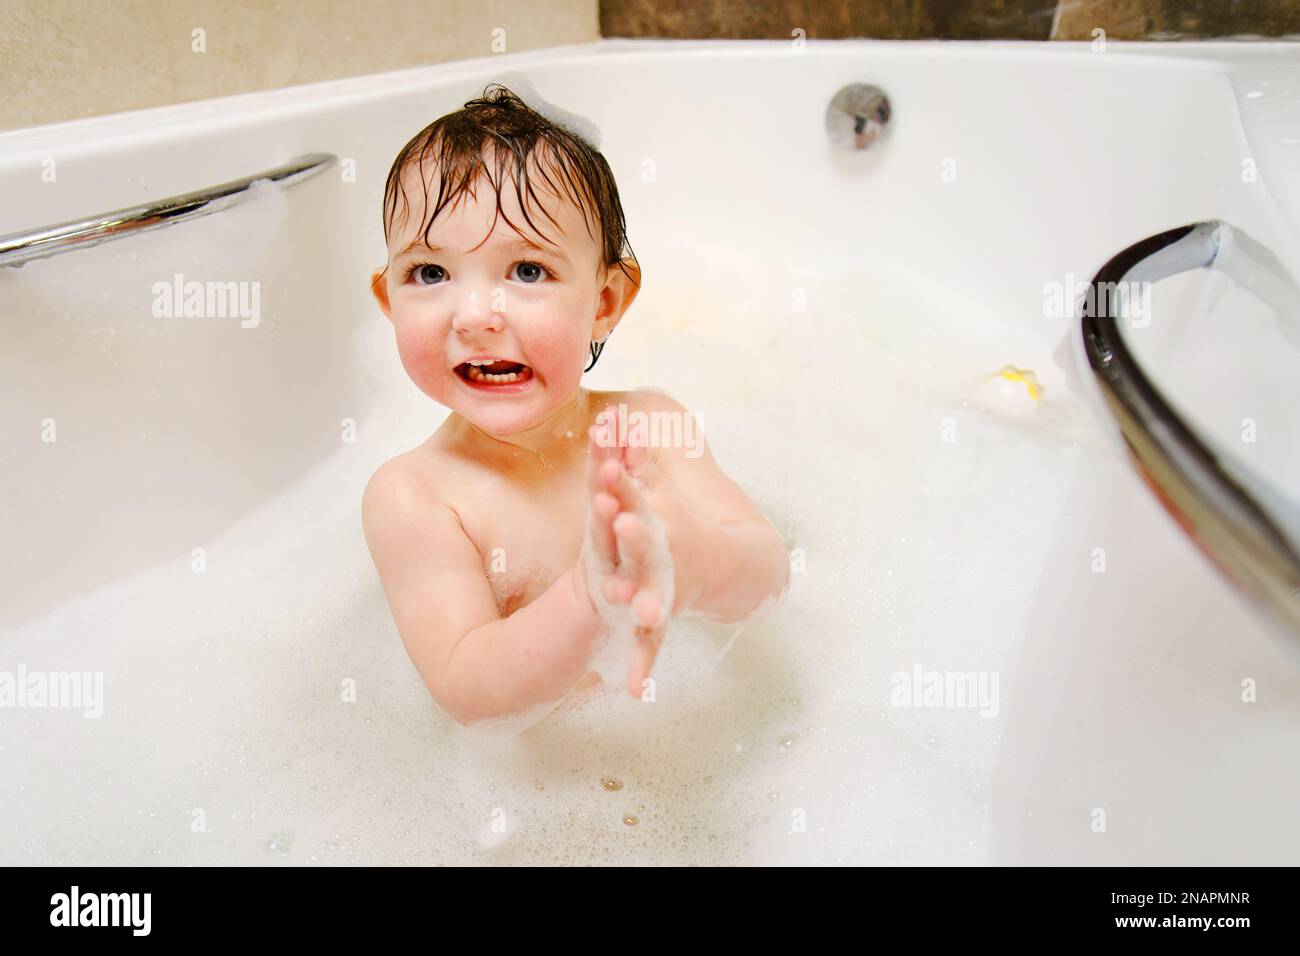 Ein glückliches Kind spielt mit Seifenblasen, während es in einer weißen Badewanne sitzt. Ein lächelnder kleiner Junge badet im Badezimmer. Ein Kind im Alter von einem Jahr Stockfoto